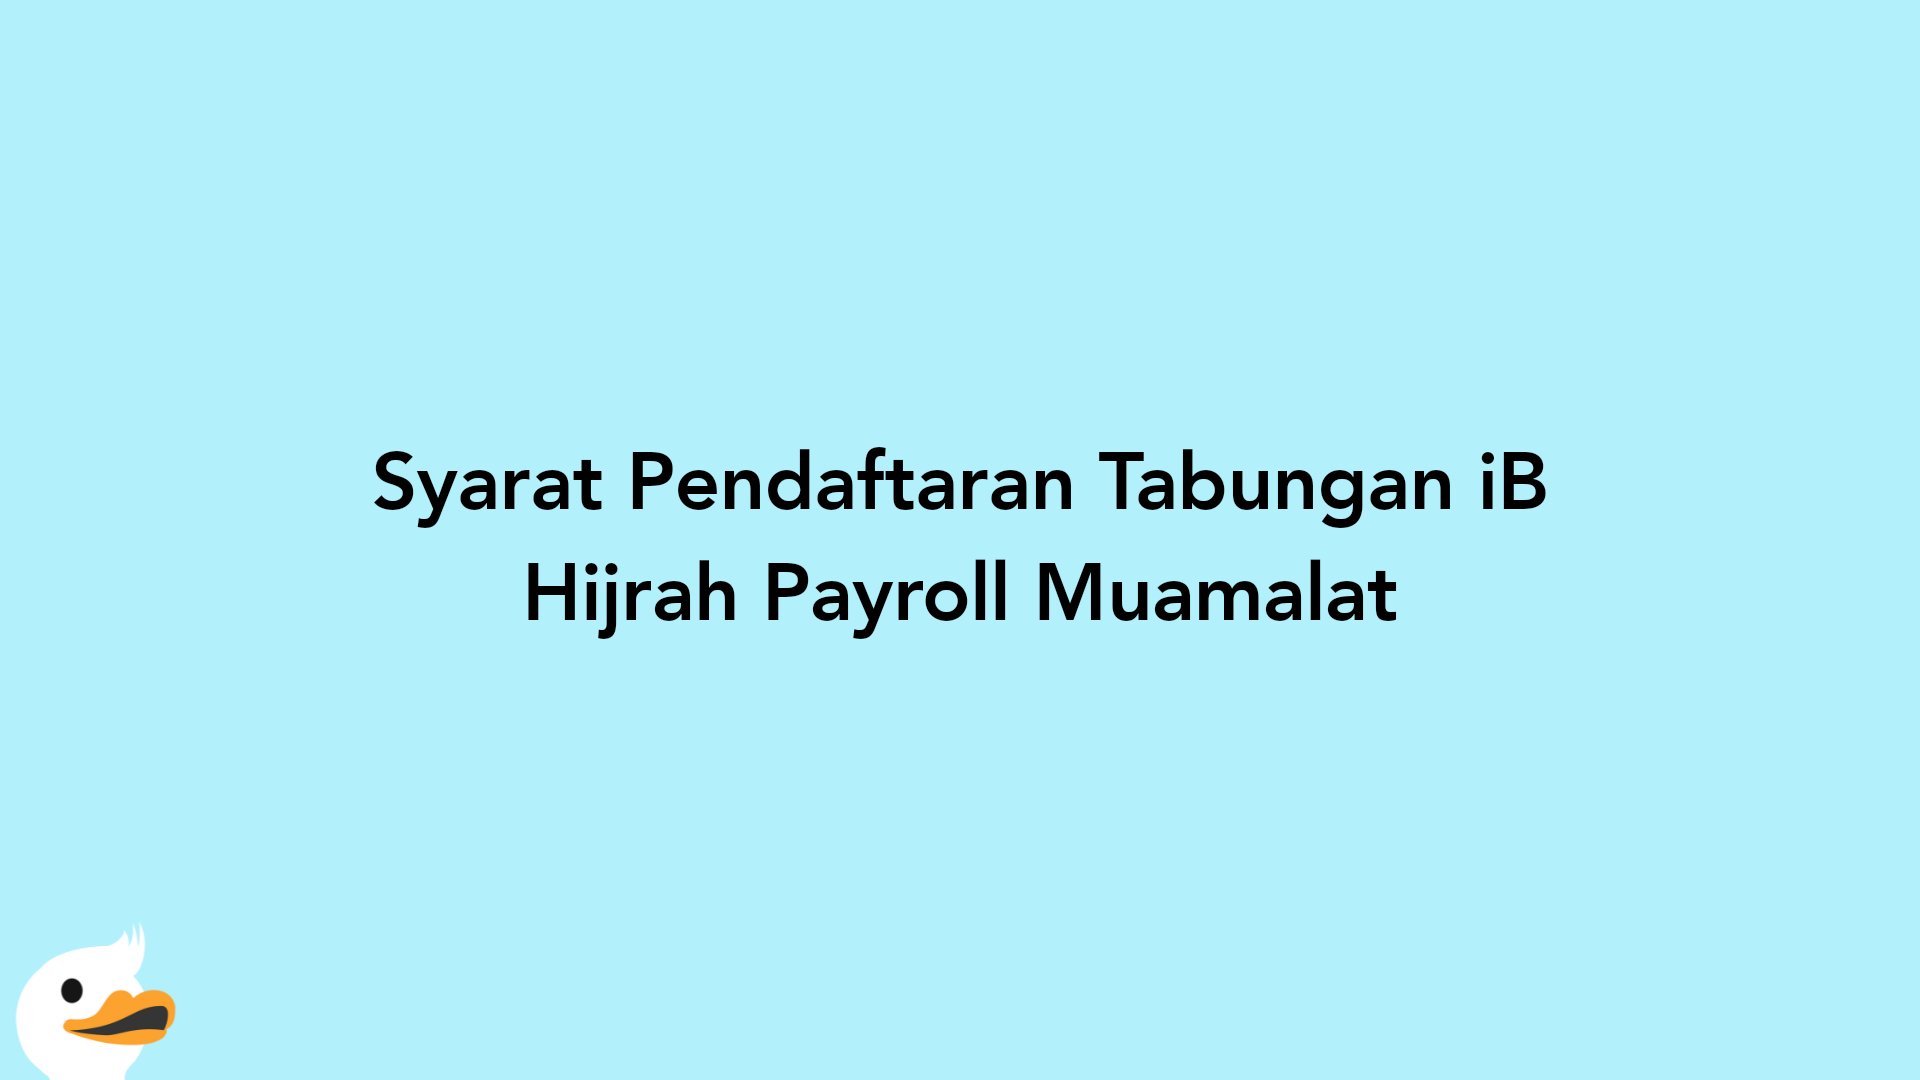 Syarat Pendaftaran Tabungan iB Hijrah Payroll Muamalat